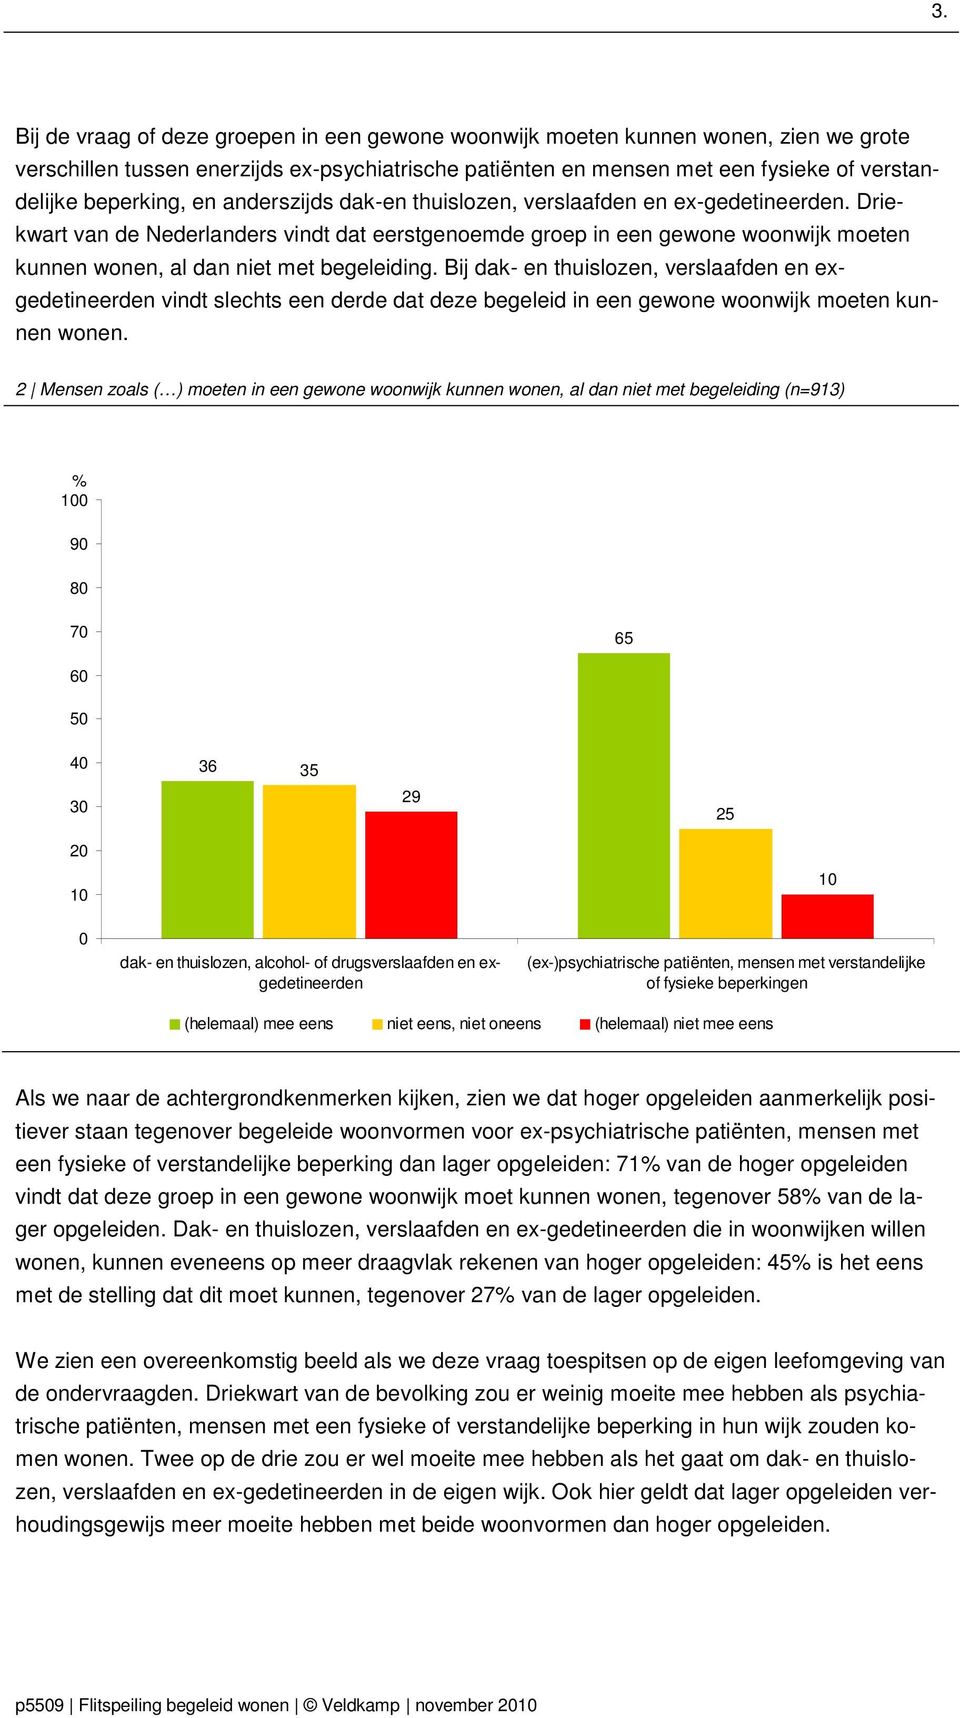 Driekwart van de Nederlanders vindt dat eerstgenoemde groep in een gewone woonwijk moeten kunnen wonen, al dan niet met begeleiding.